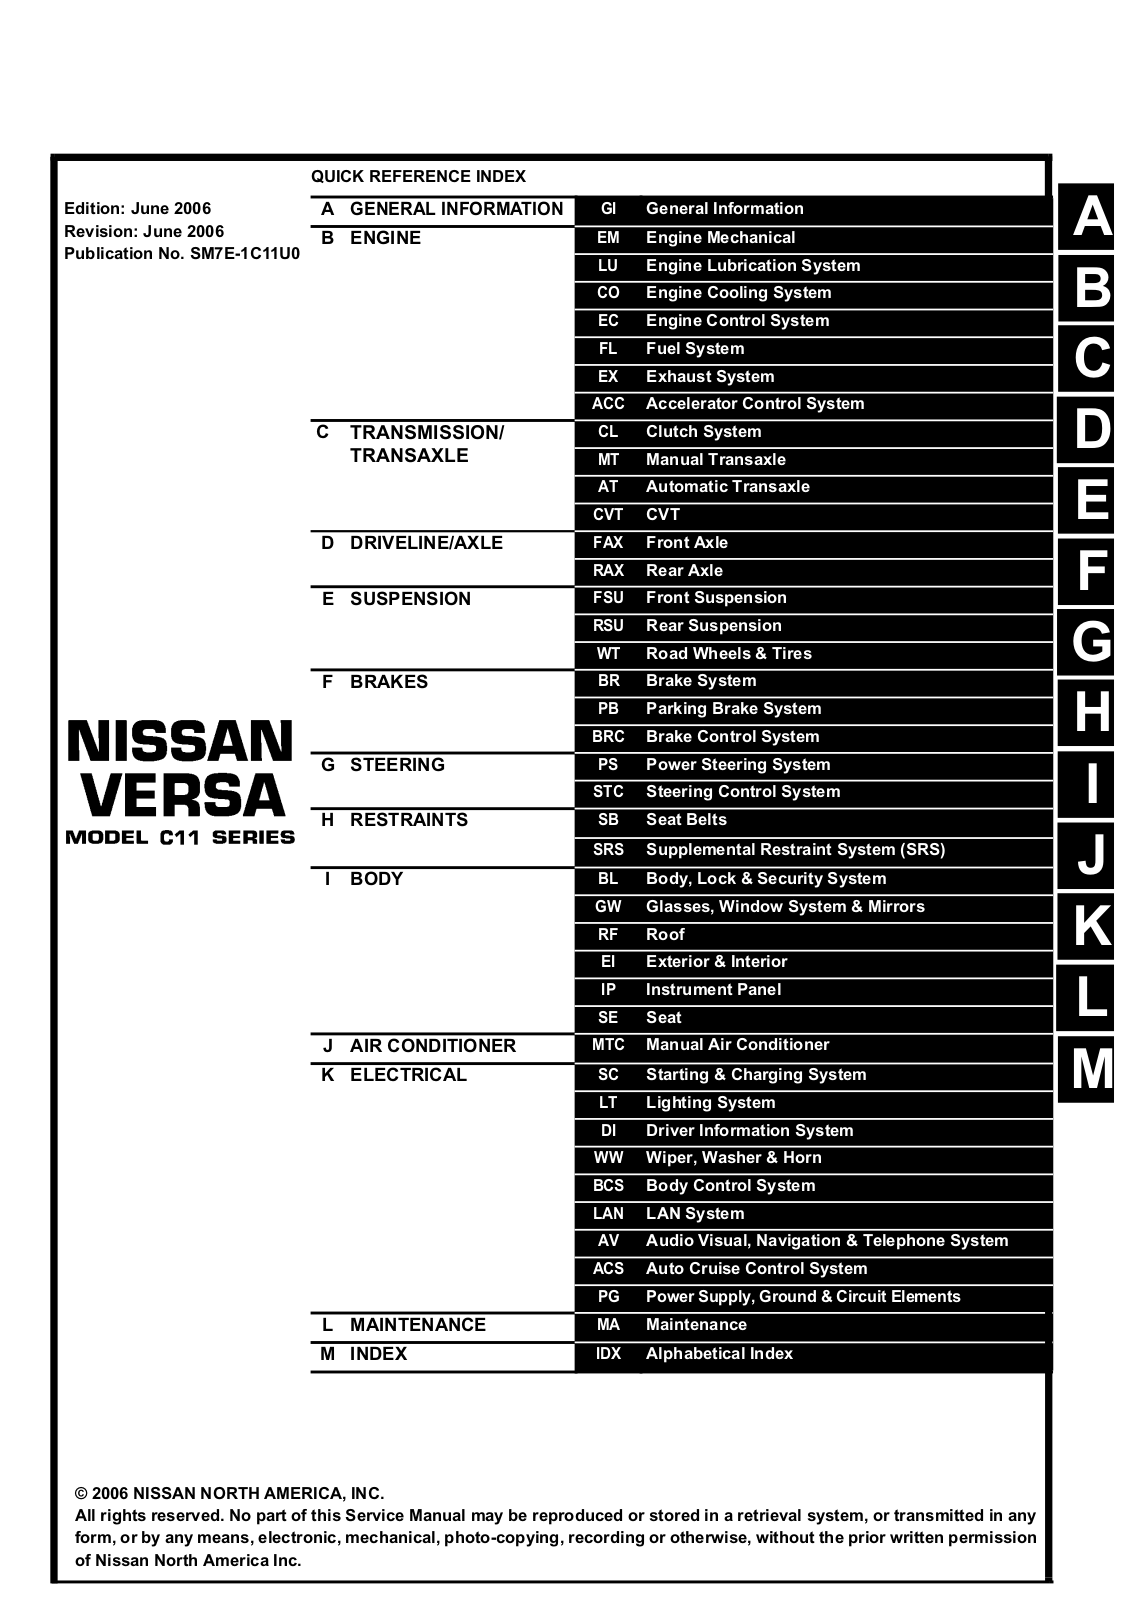 Nissan Tiida 2006 User Manual